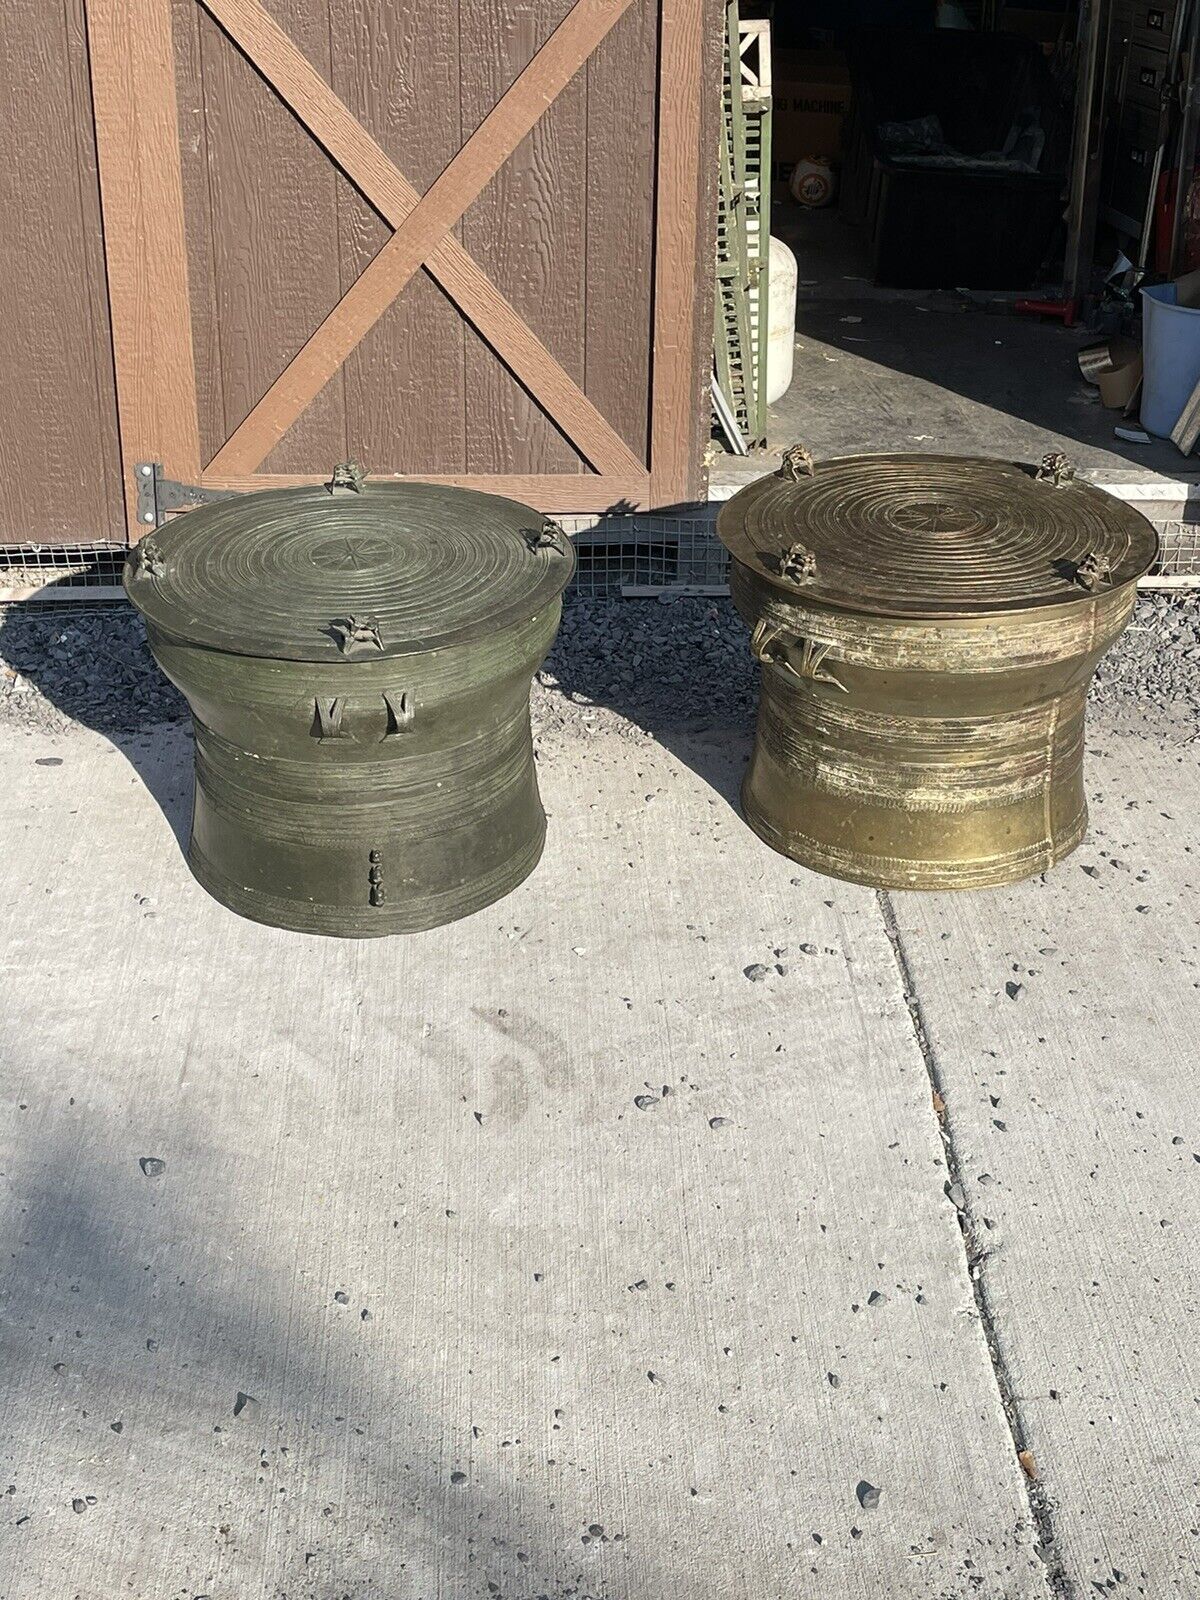 2 Vintage Dong Son Brass & Bronze Rain Drum Drums End Tables 85 Pounds Each